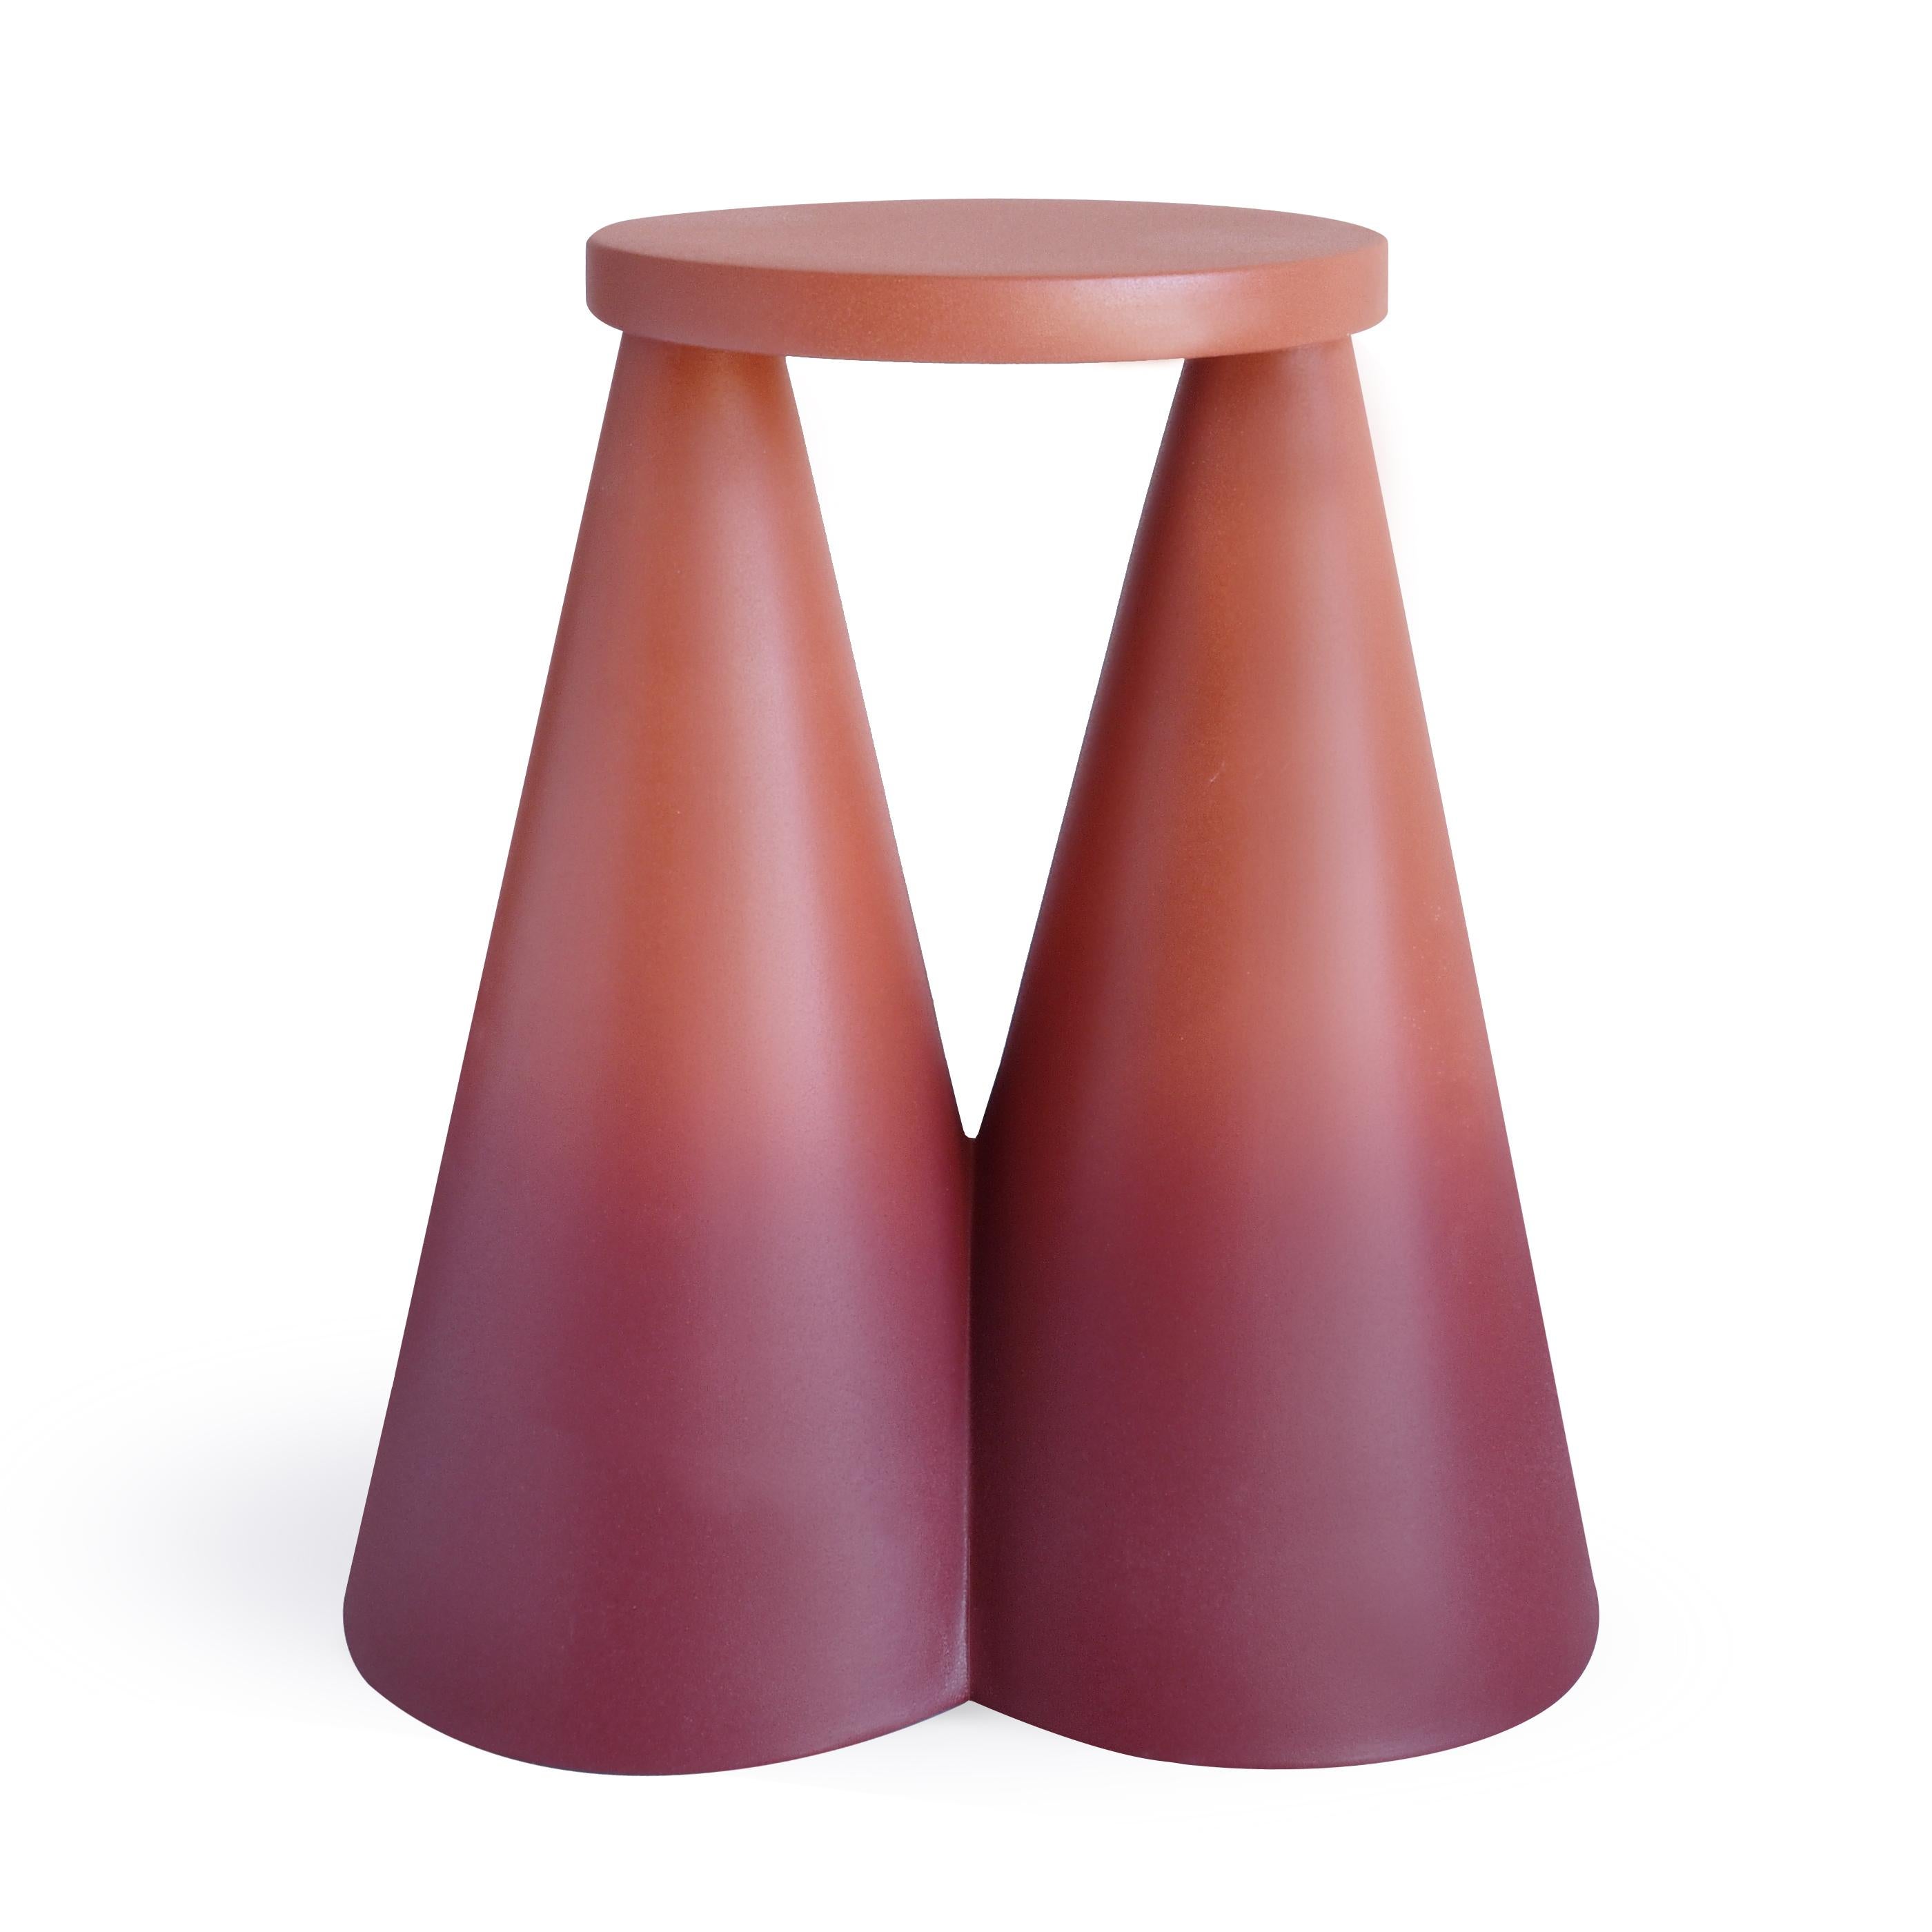 Table d'appoint/table d'appoint conique en céramique Isola/Davide pour Portego, conçue par Cara/Davide